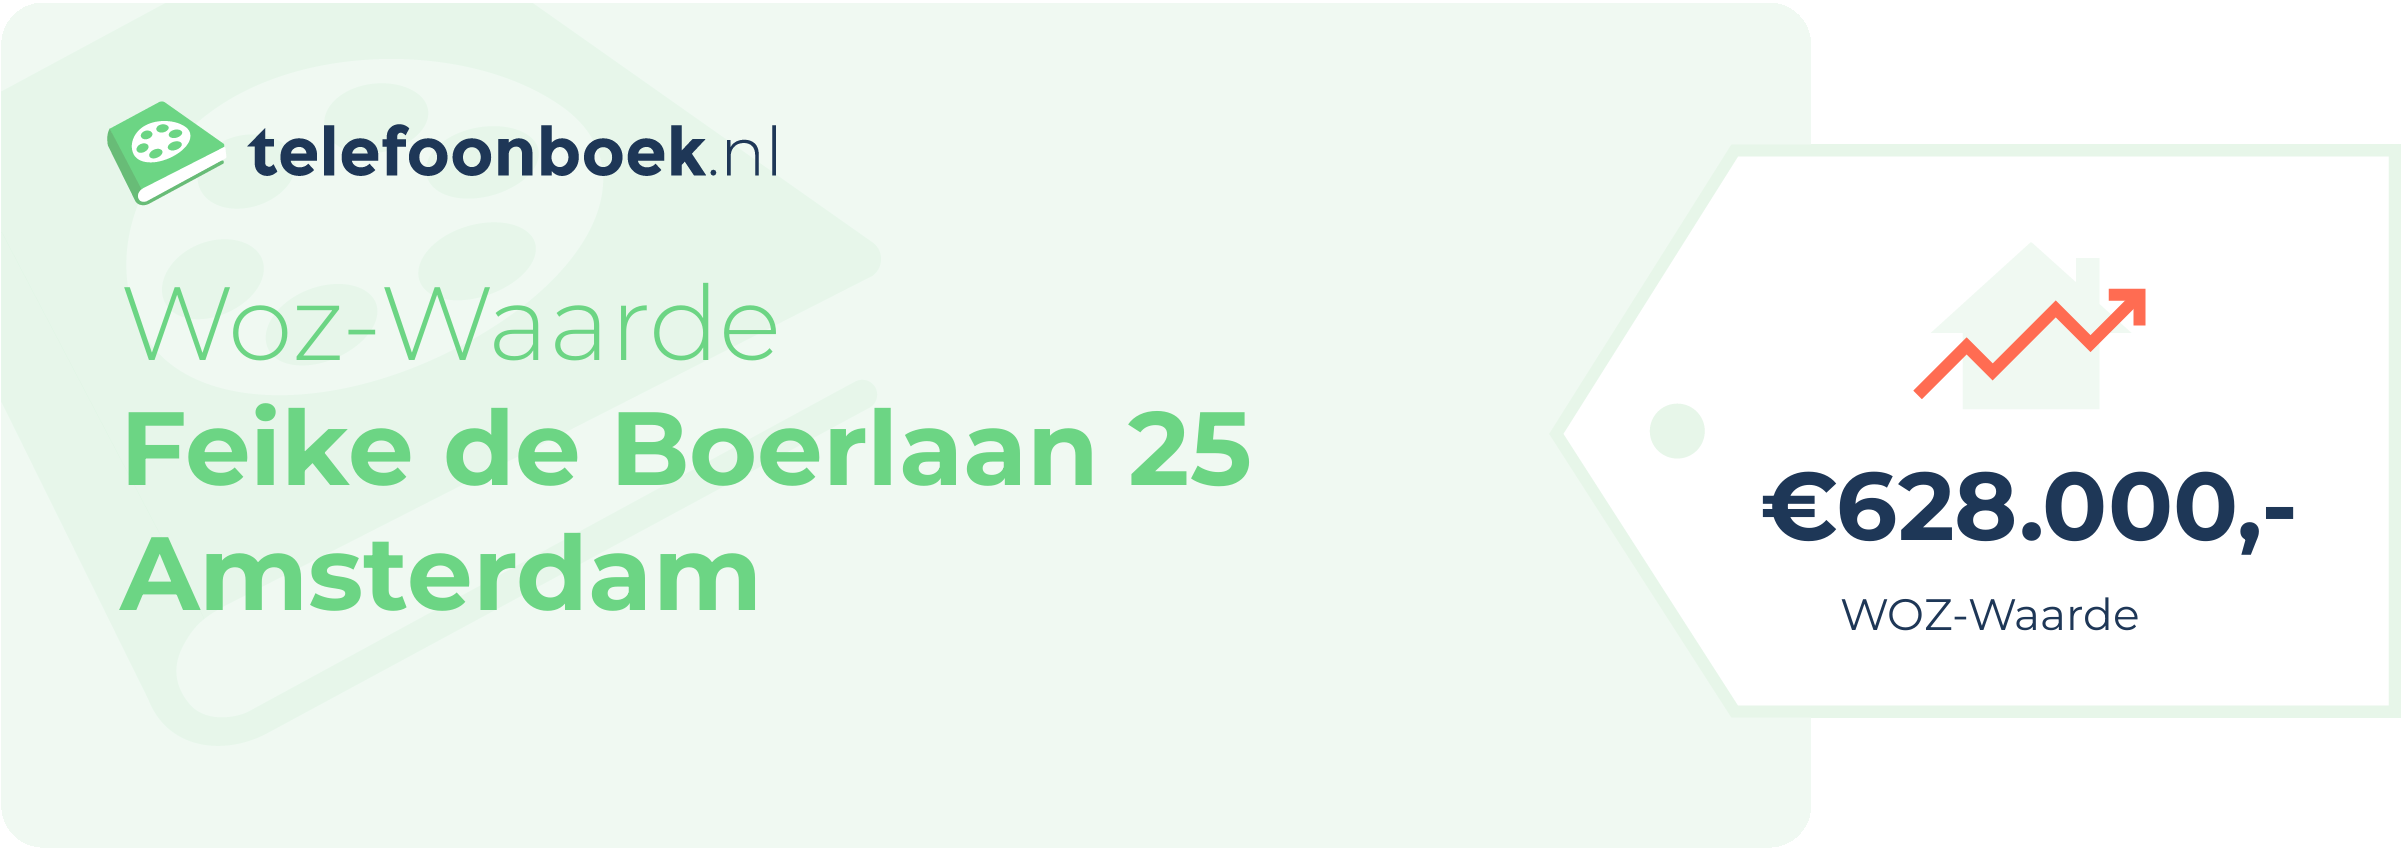 WOZ-waarde Feike De Boerlaan 25 Amsterdam